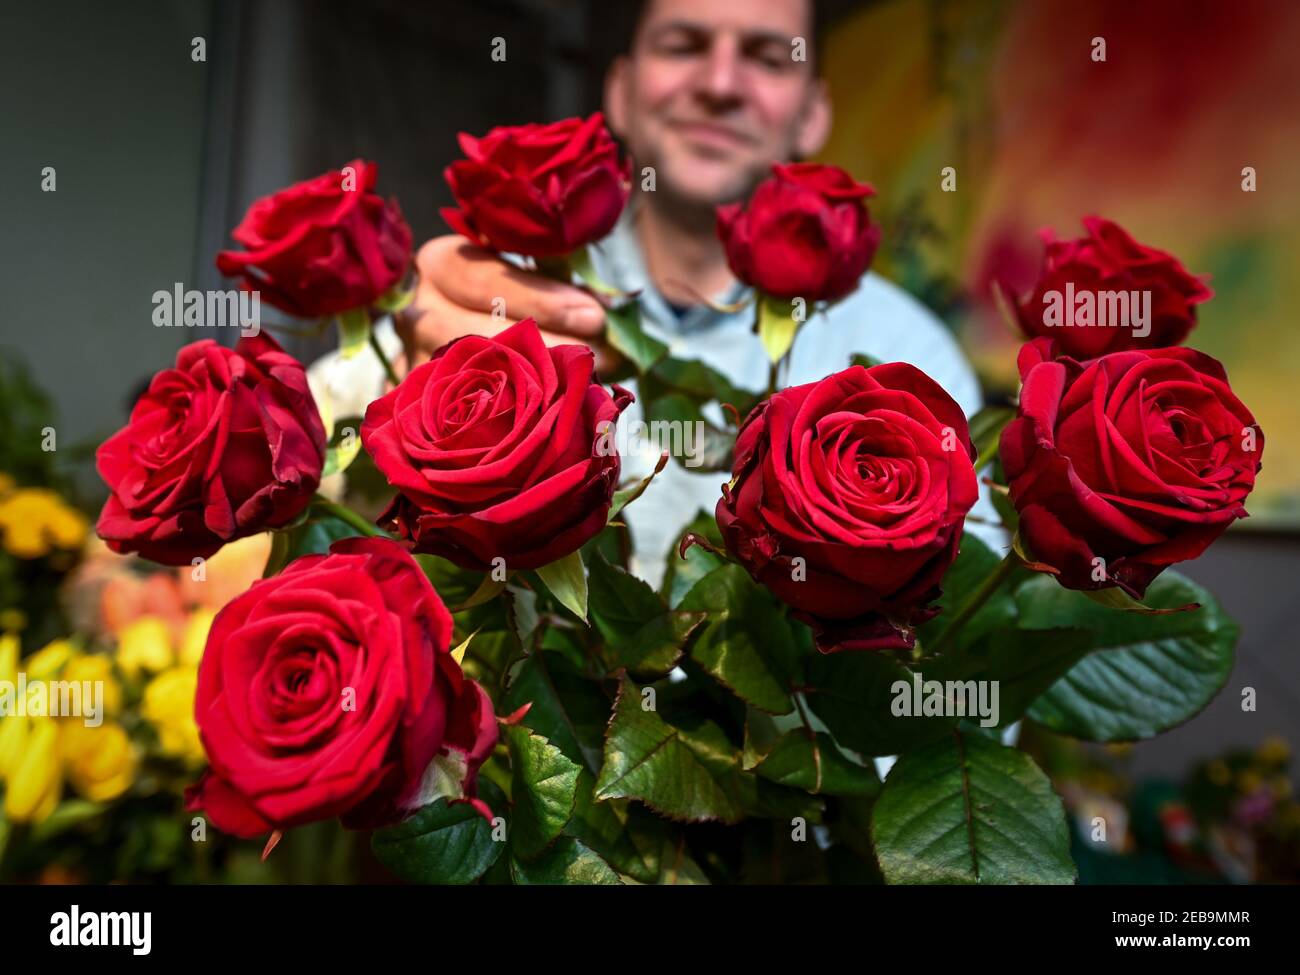 Leipzig, Deutschland. Februar 2021, 11th. Veit Petzold, Floristen-Meister  und Geschäftsführer von Blumenland Engler, hält rote Rosen für einen  Strauß. Am Sonntag (14,02.2021) ist Valentinstag. Besonders rote Rosen  gelten als Liebesbeweis und sind